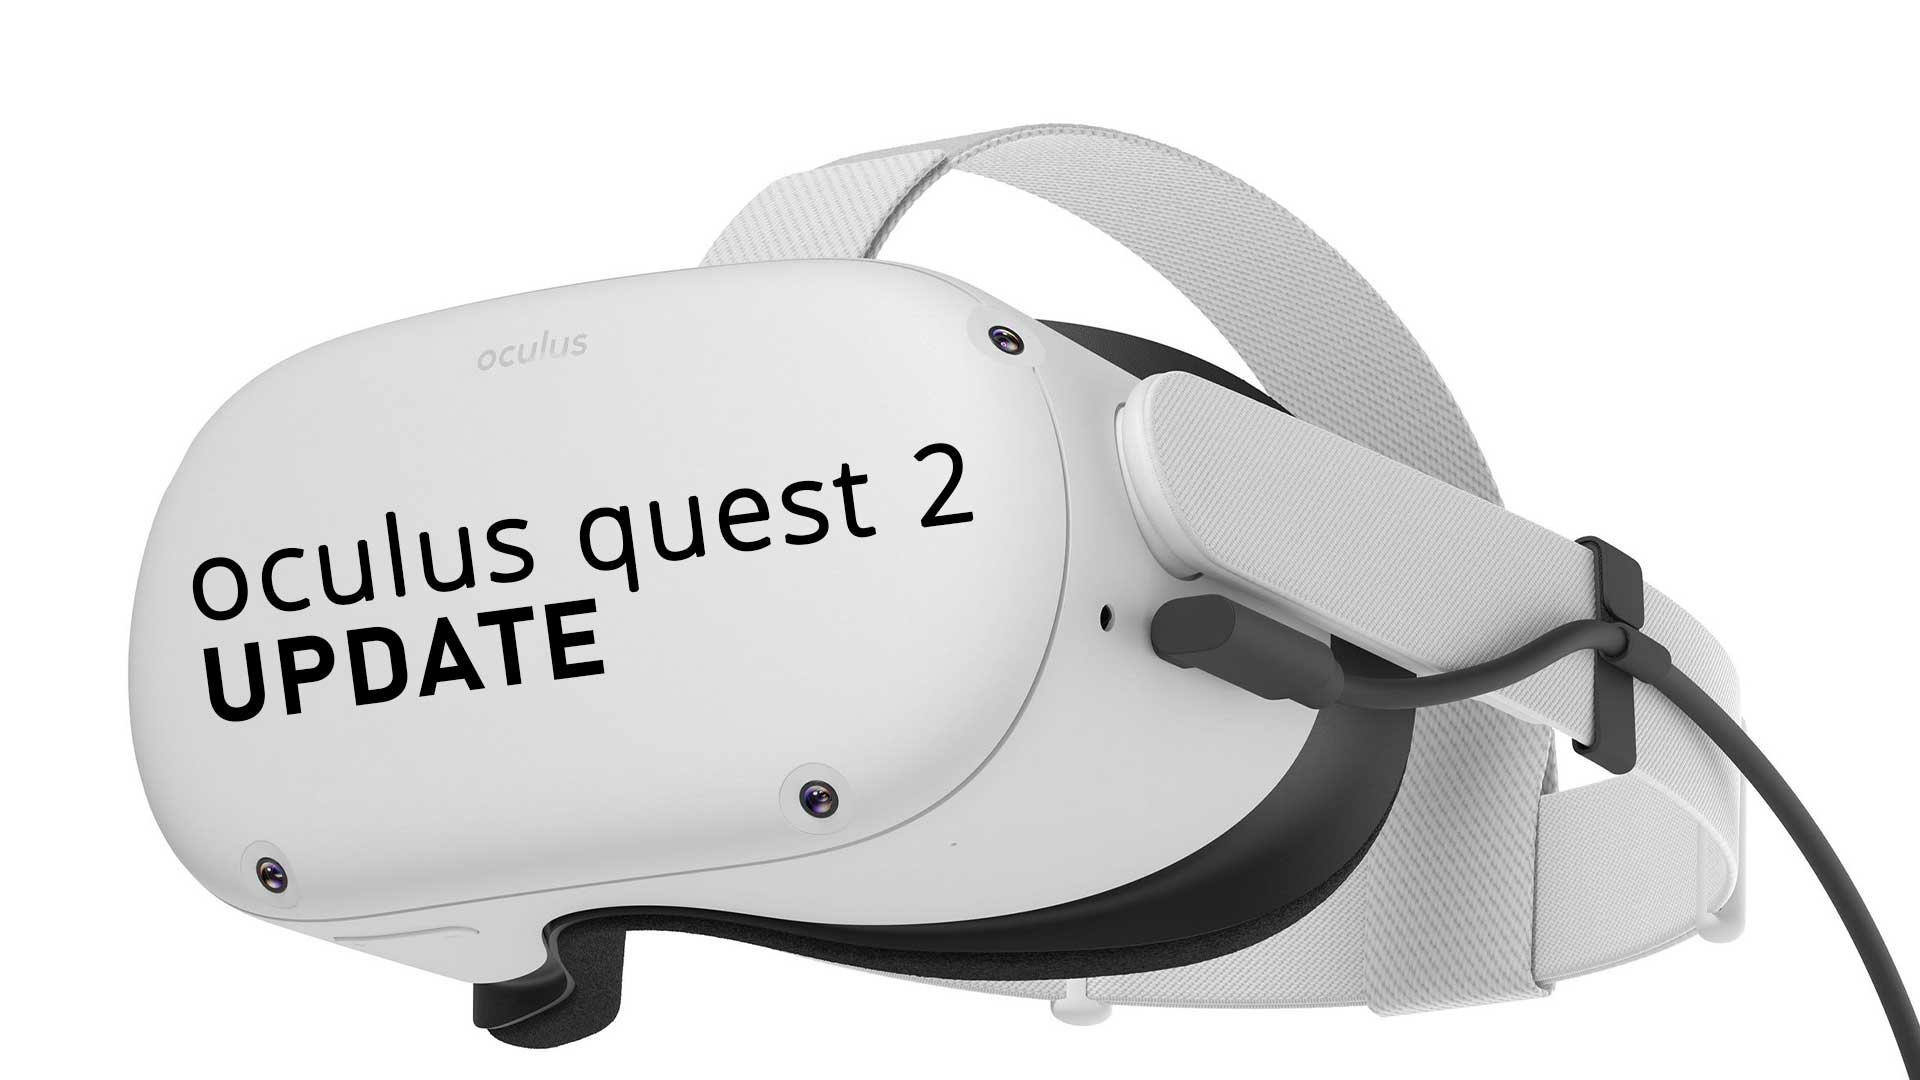 oculus quest 2 update